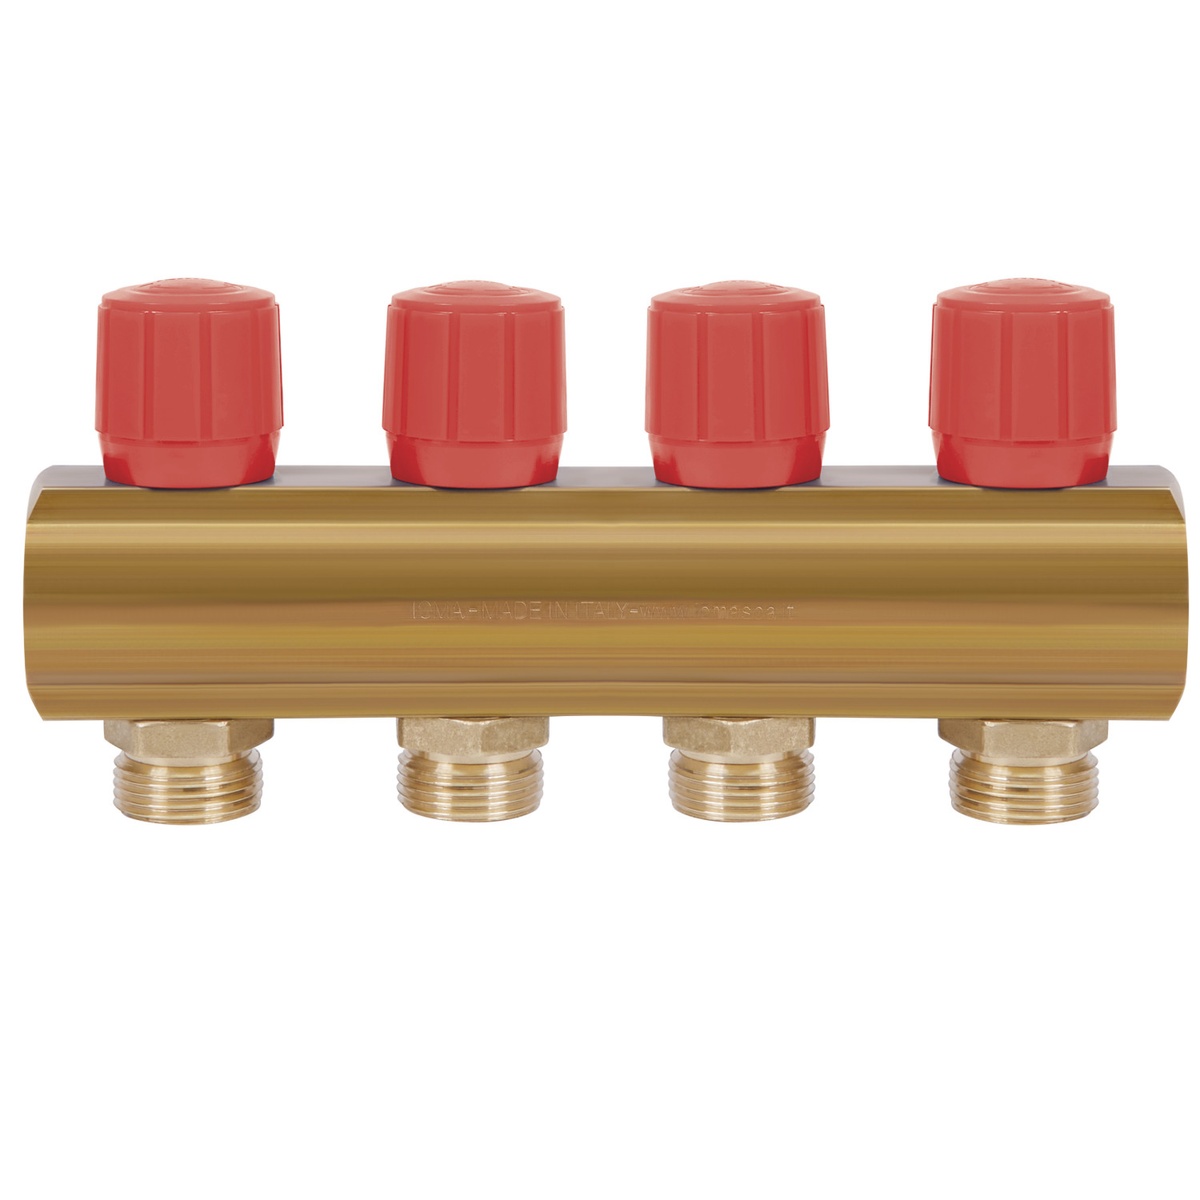 Коллектор для водопровода ICMA 4 контура 1"/3/4" 1105 (Red) 871105PJ0511